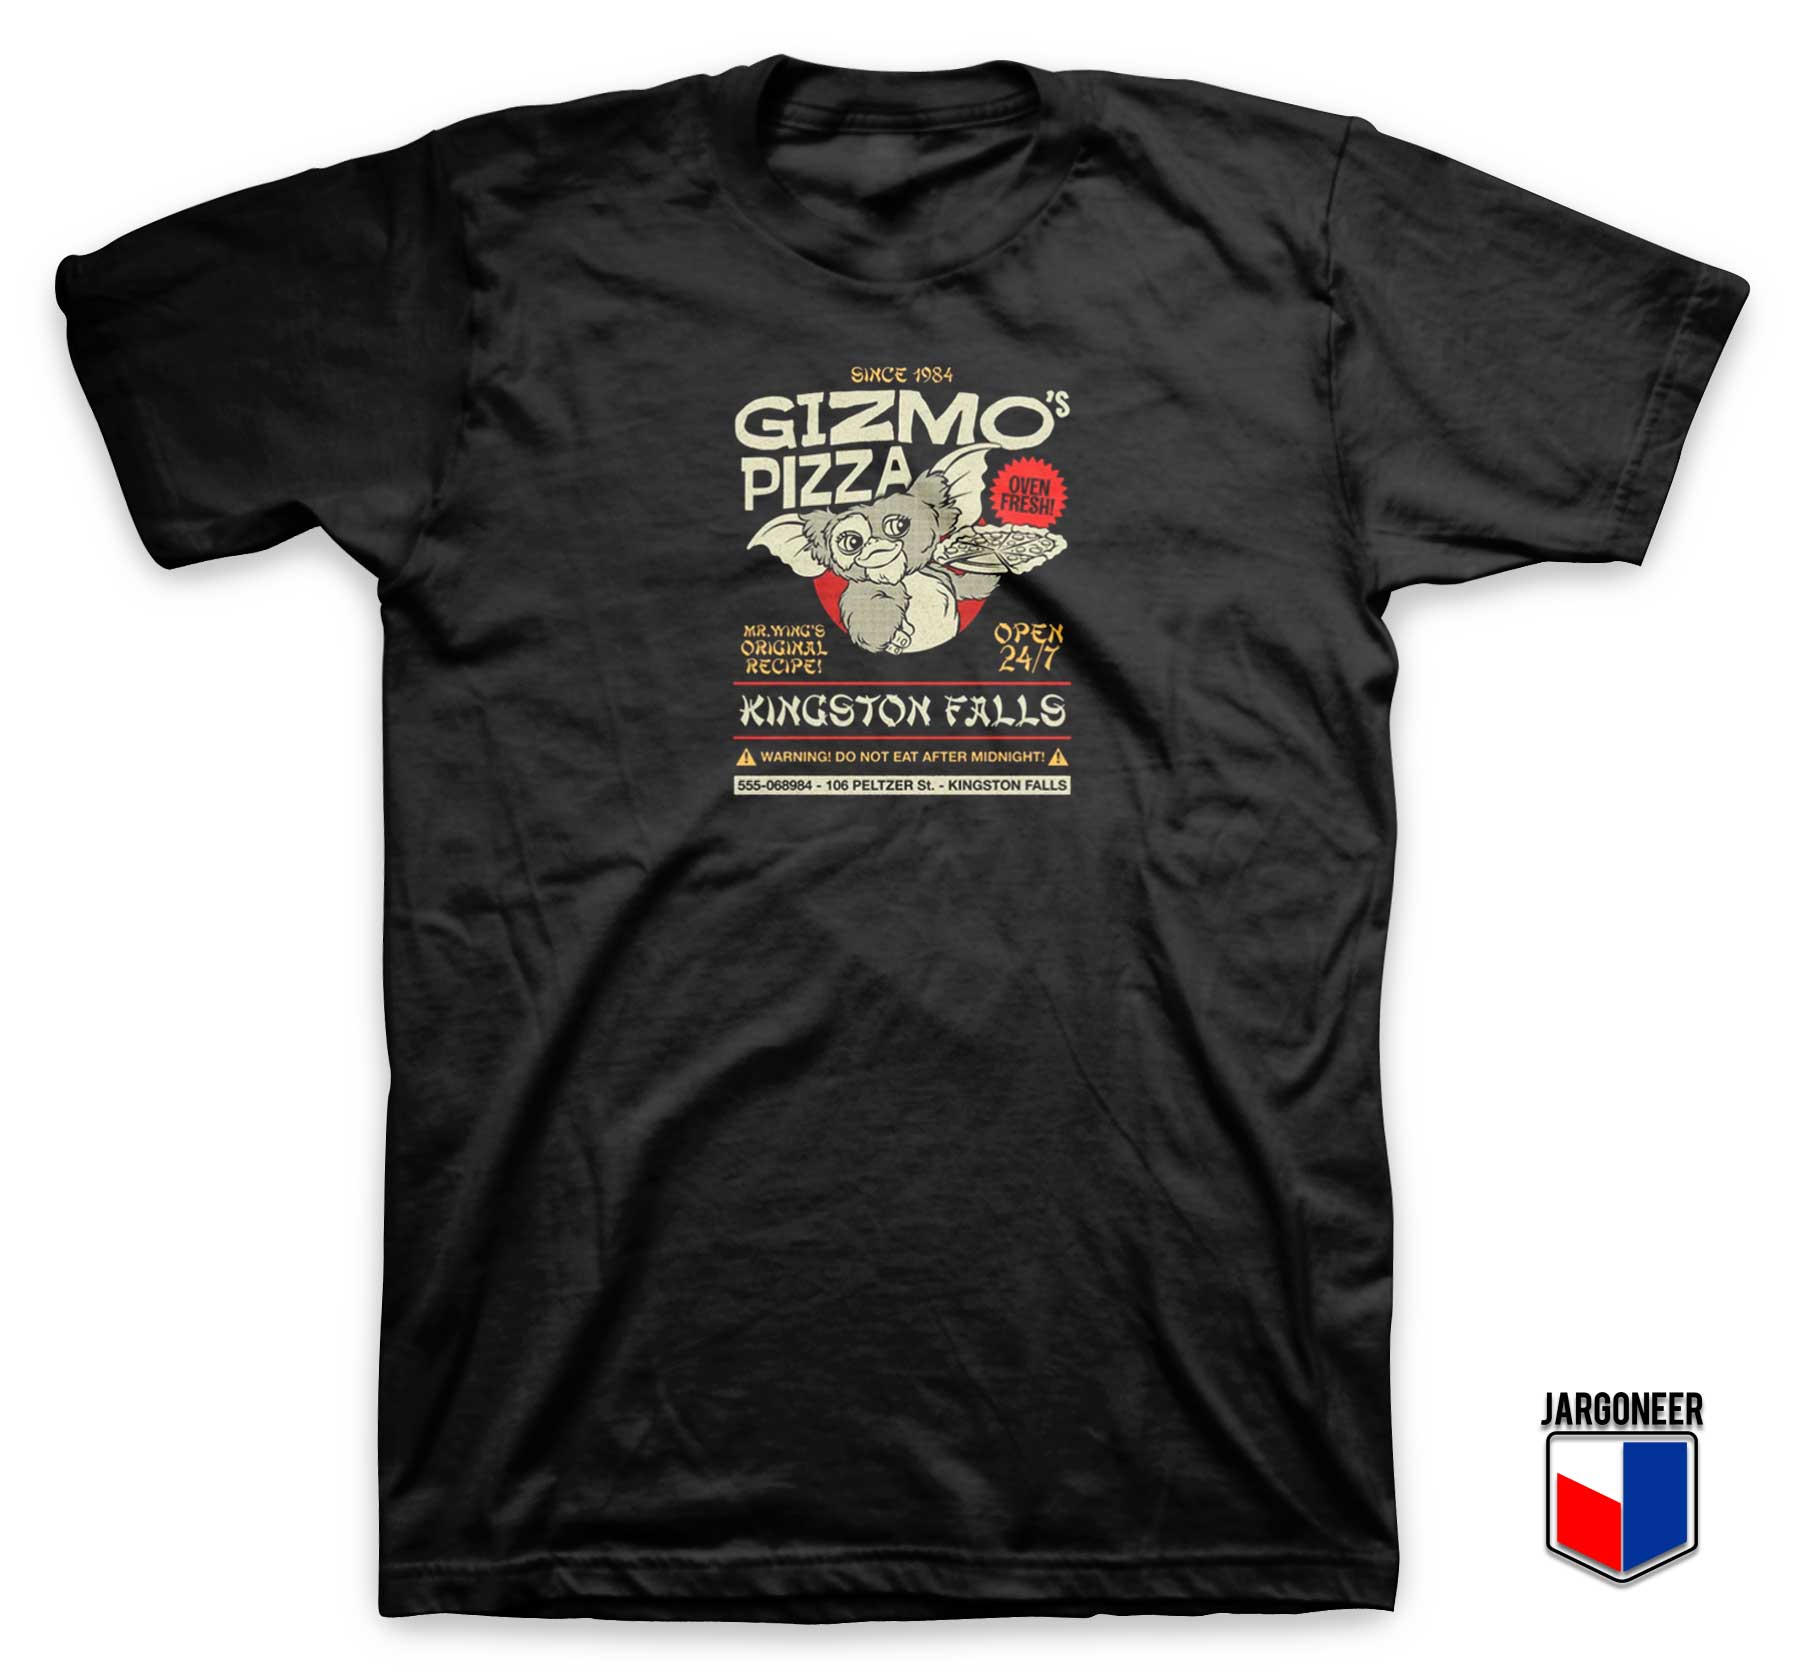 Gizmos Pizza T Shirt - Shop Unique Graphic Cool Shirt Designs